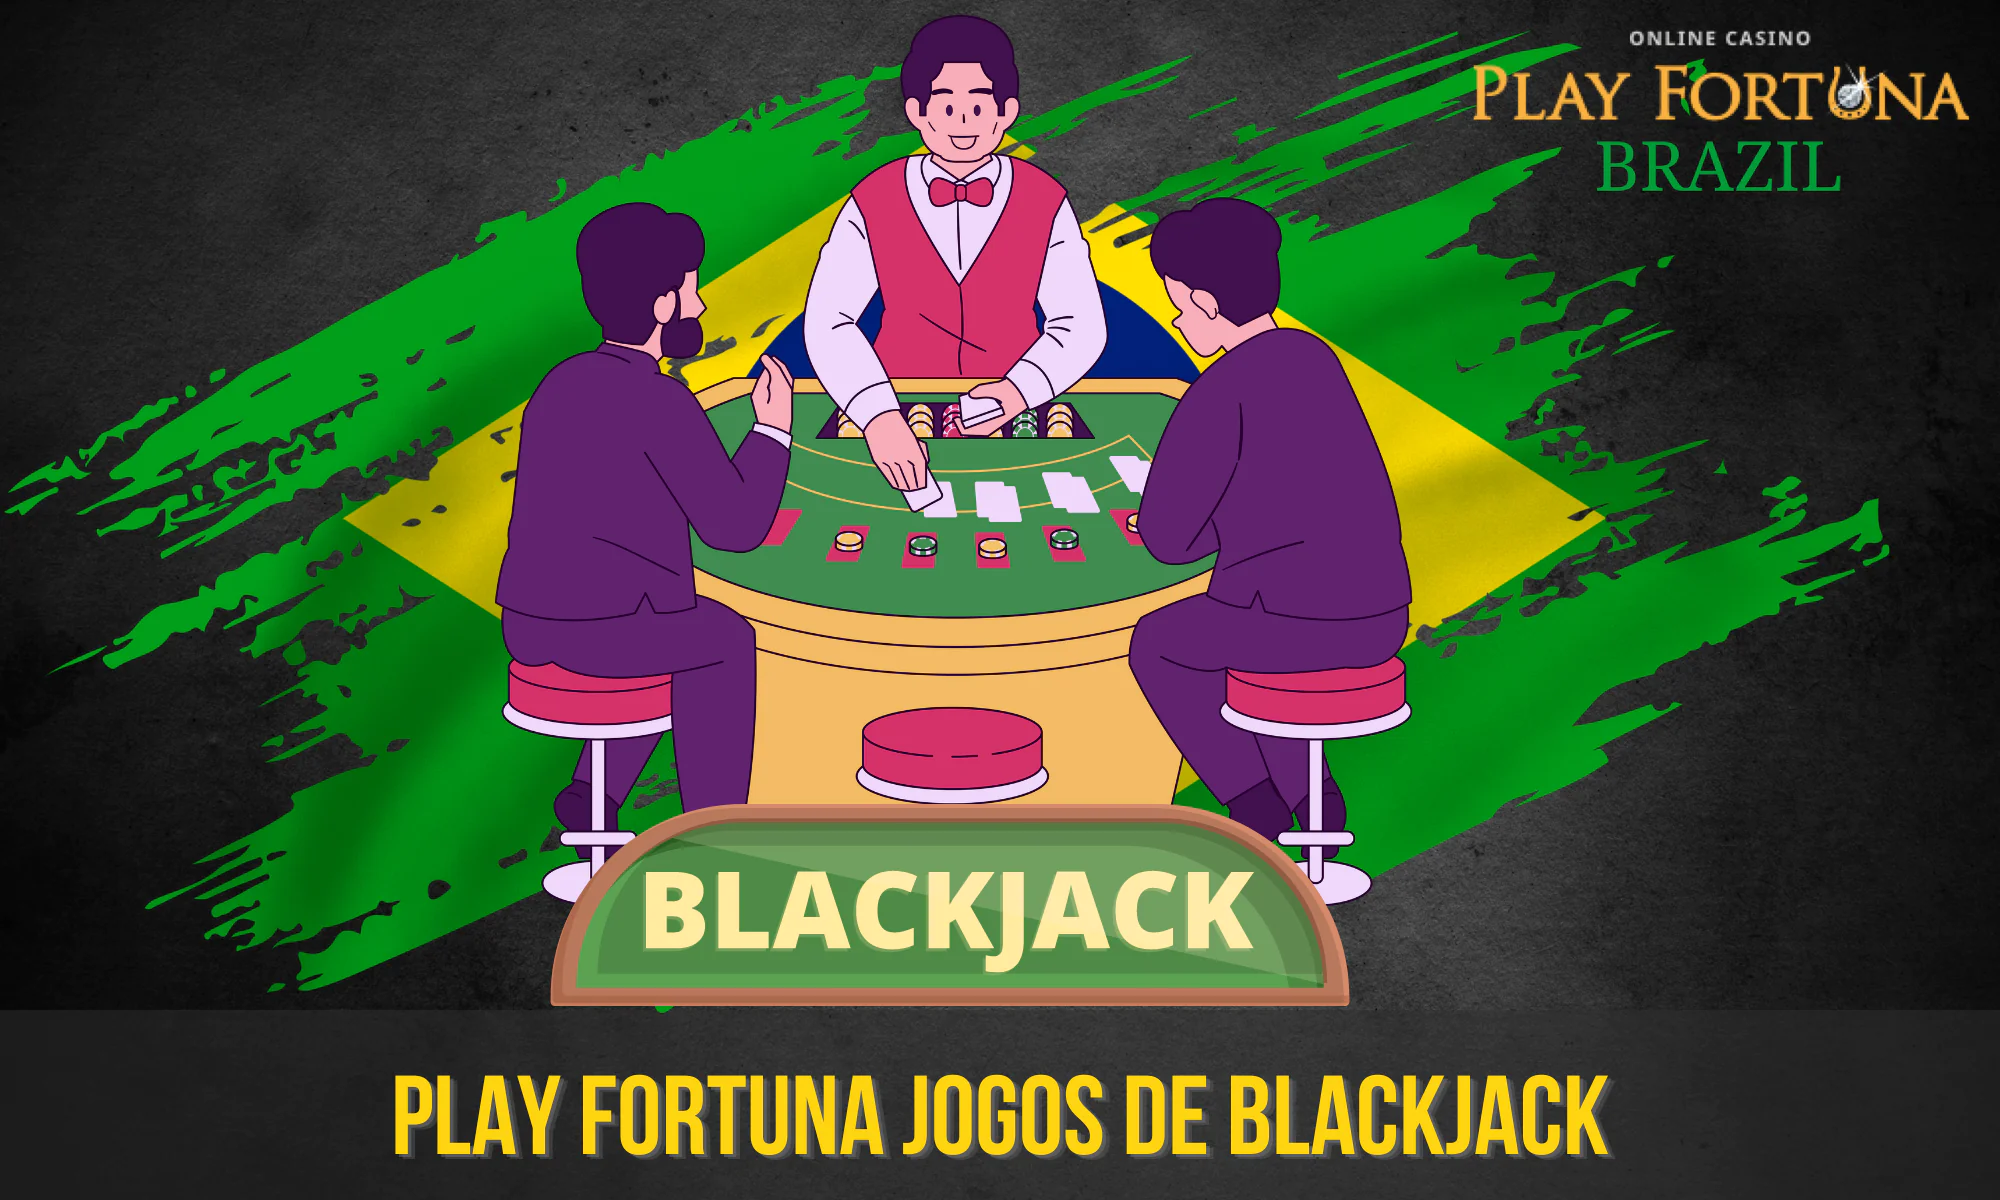 O blackjack é um dos jogos mais populares do Play Fortuna